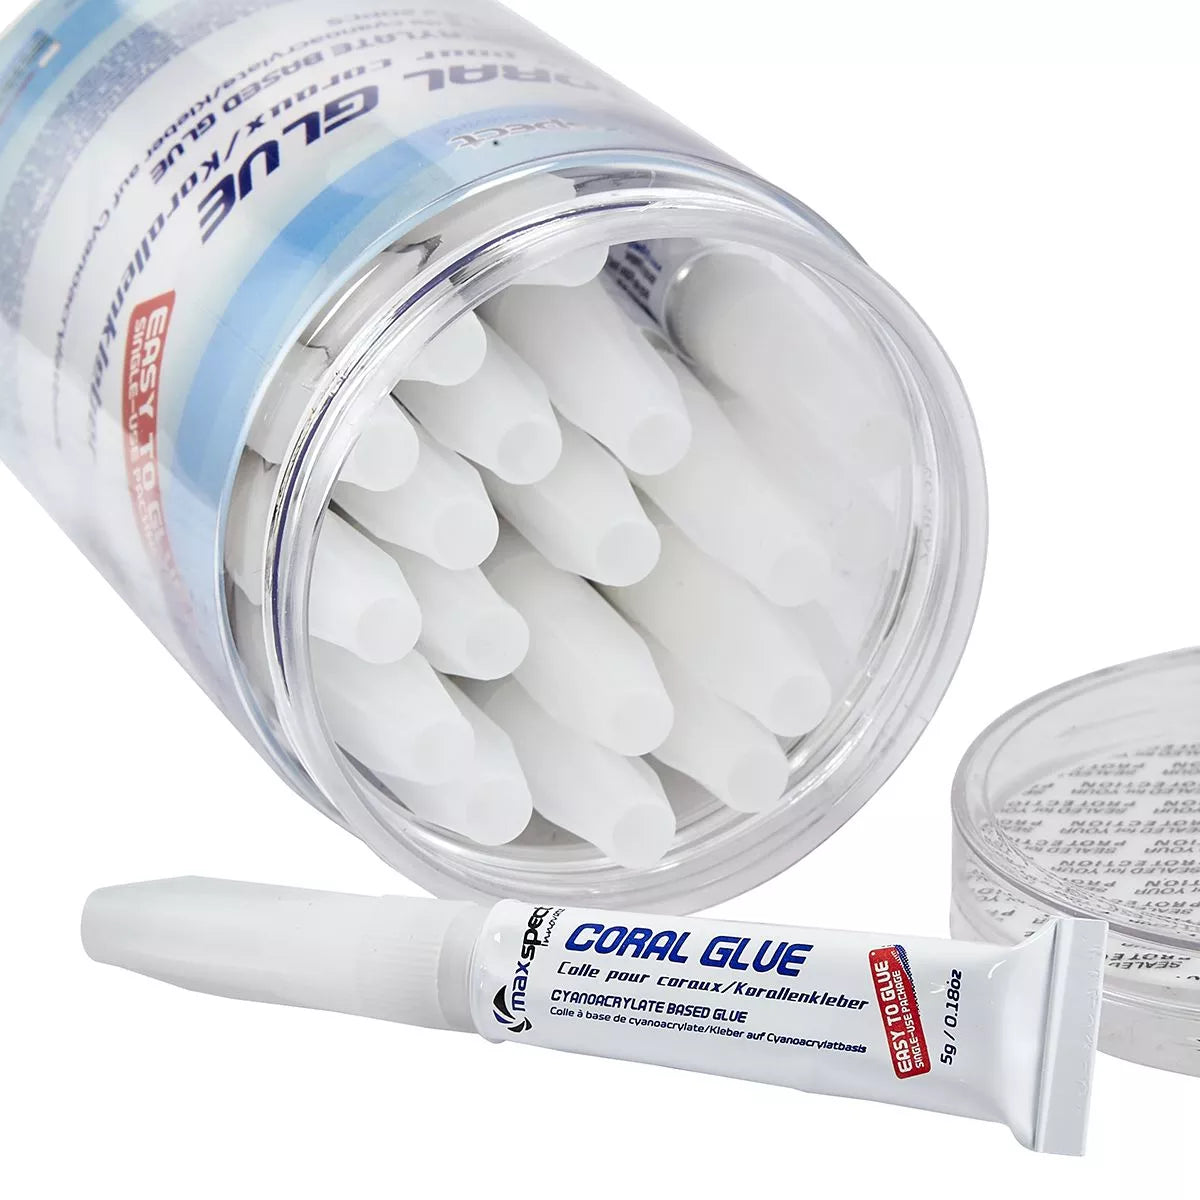 Coral Glue Jar (20x 5g tubes) - Maxspect - Maxspect